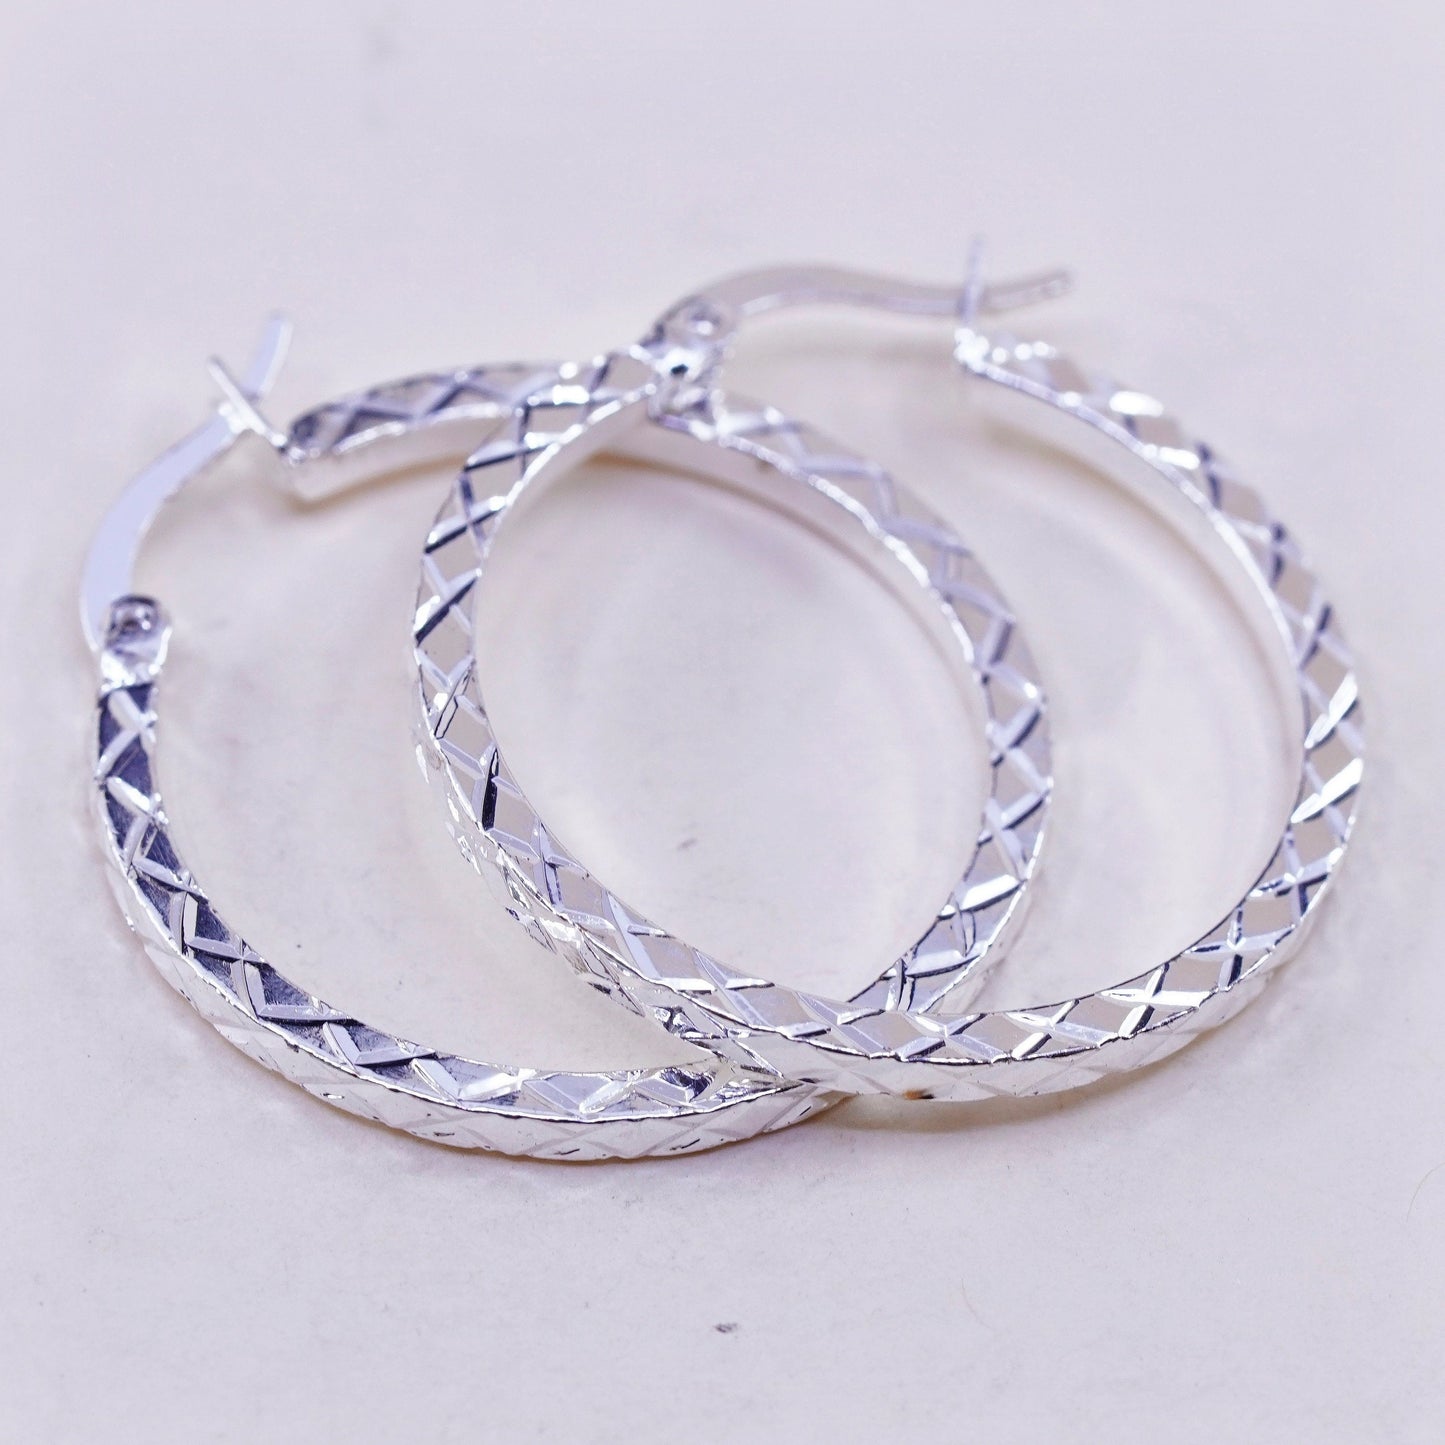 1”, Vintage sterling silver loop earrings, textured minimalist primitive hoops